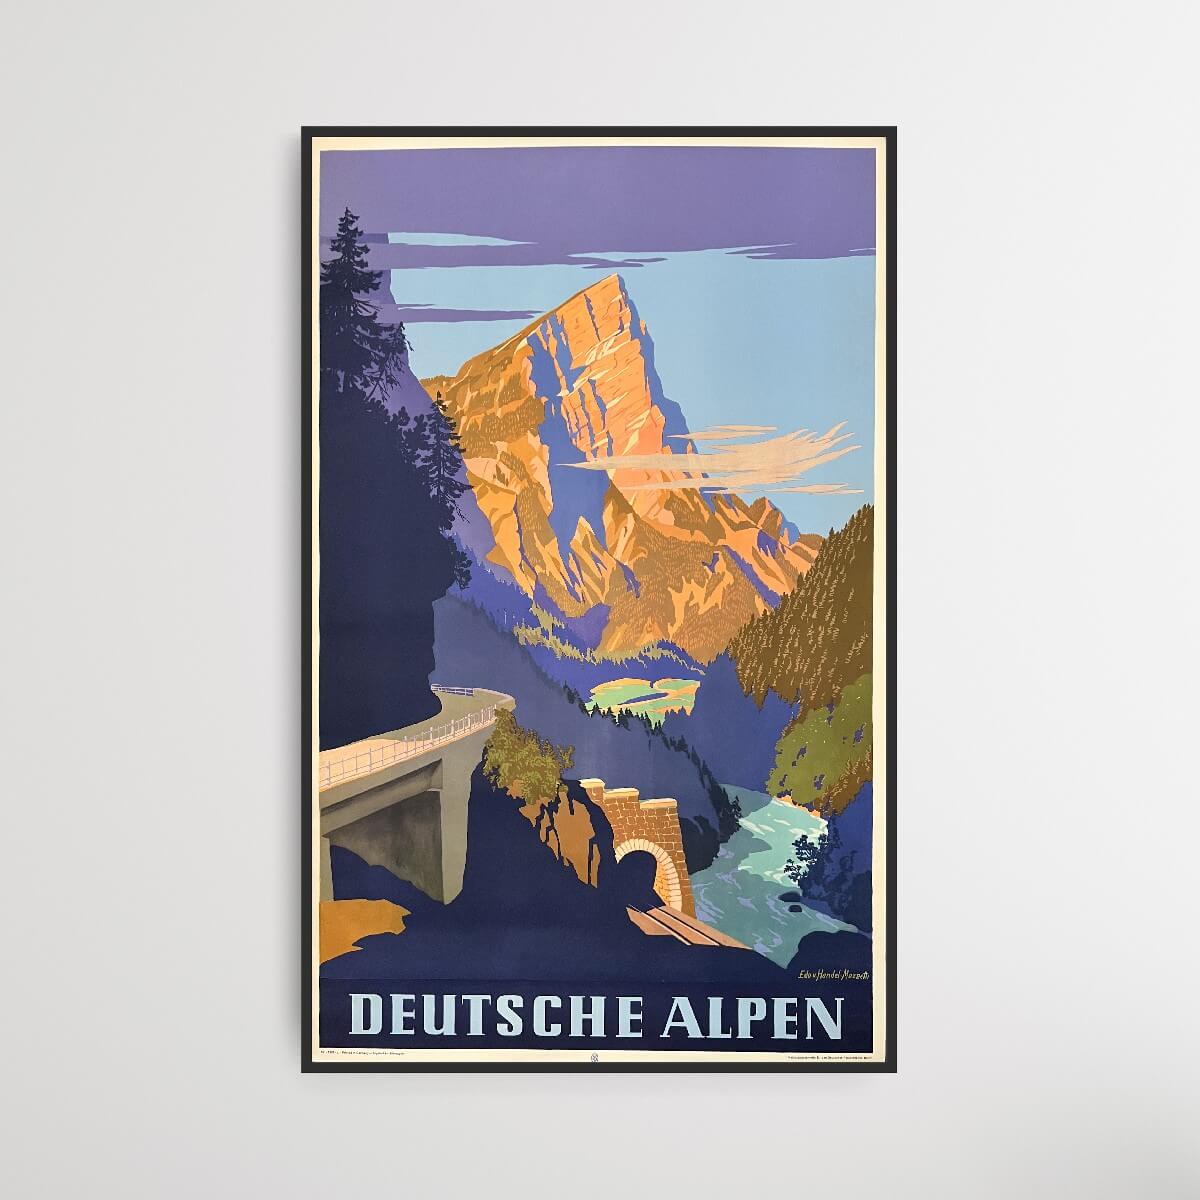 Deutsche Alpen